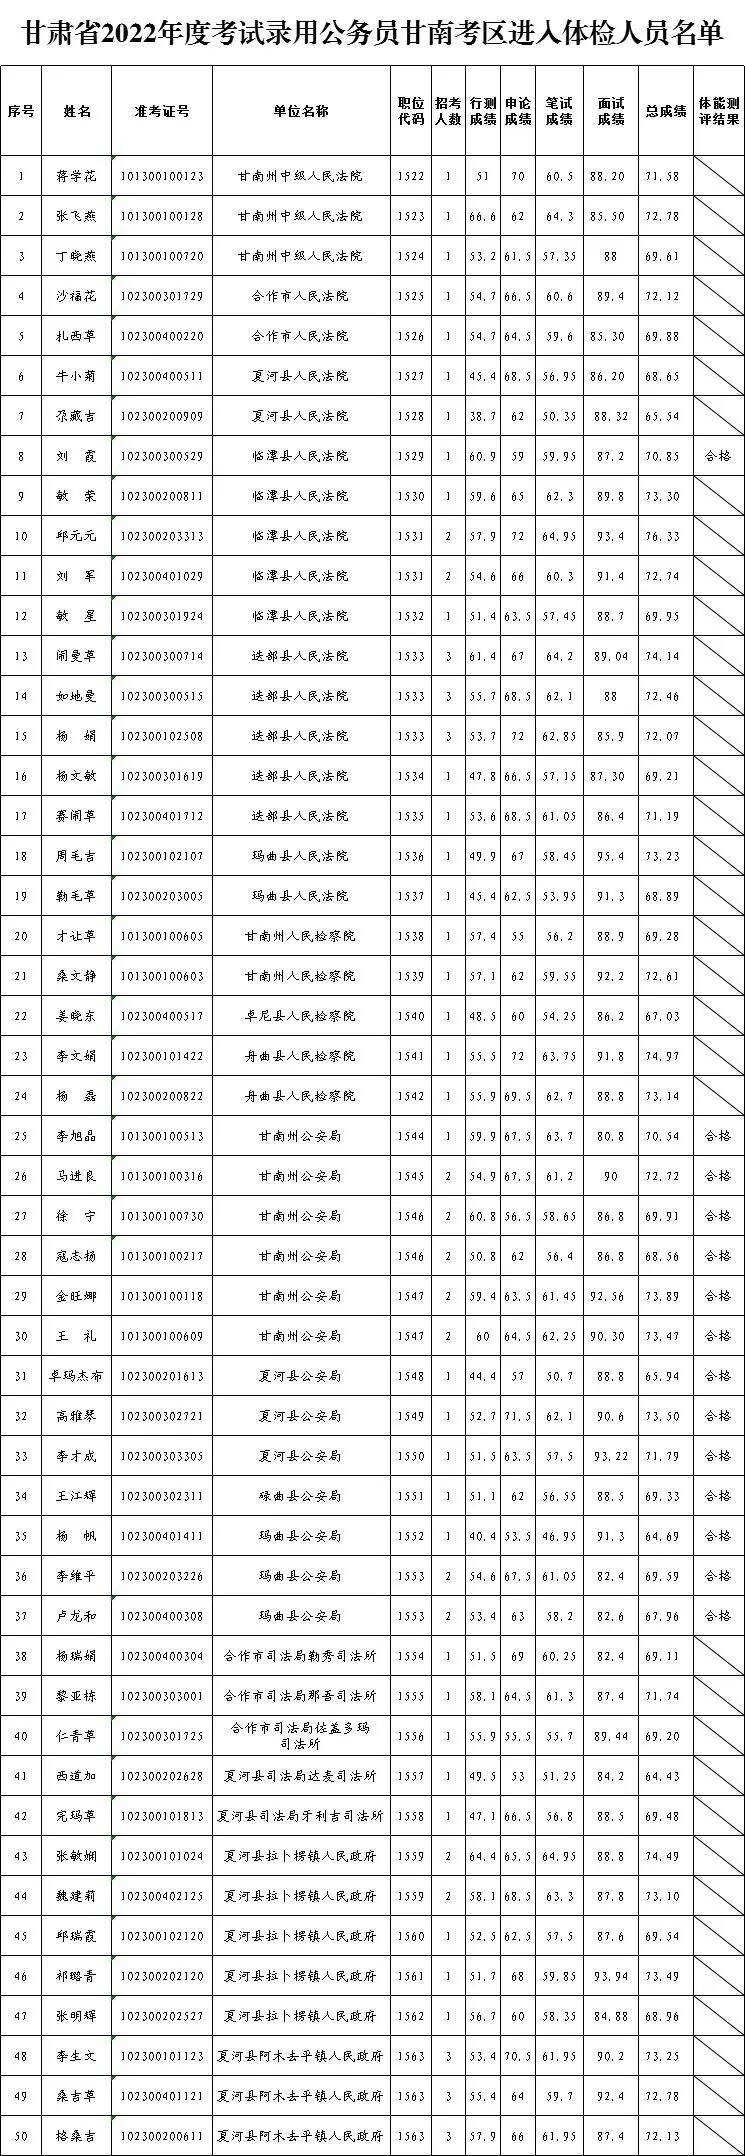 2022年度甘肃省公务员考试体检人员名单